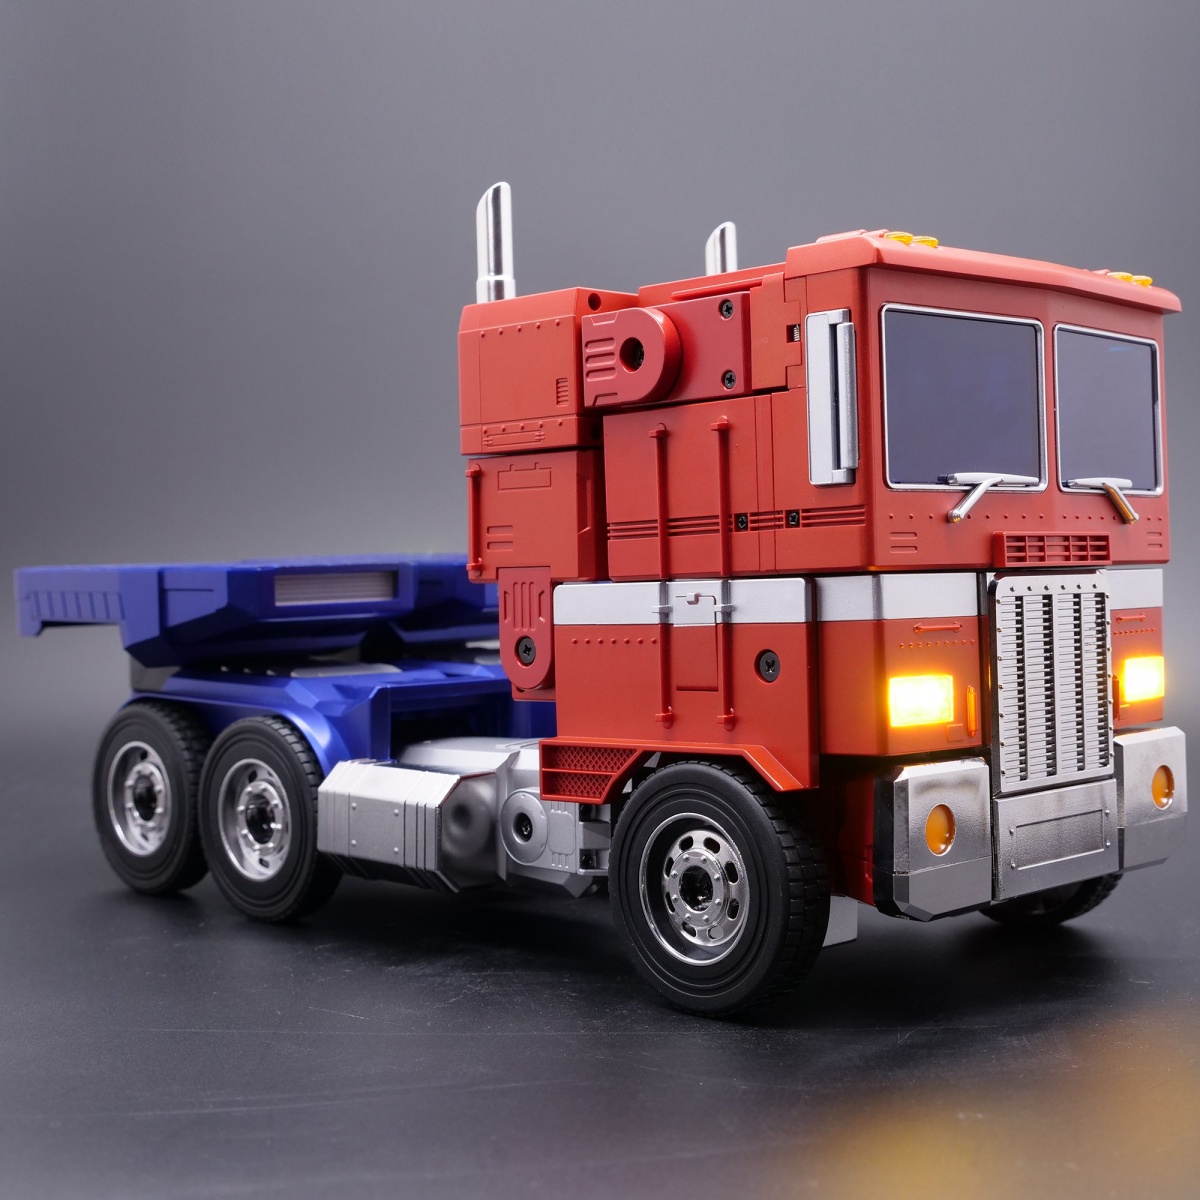 Details about   Transformers Optimus Prime Mechtech Robots Truck Car Action Figure Kid Toys Gift 